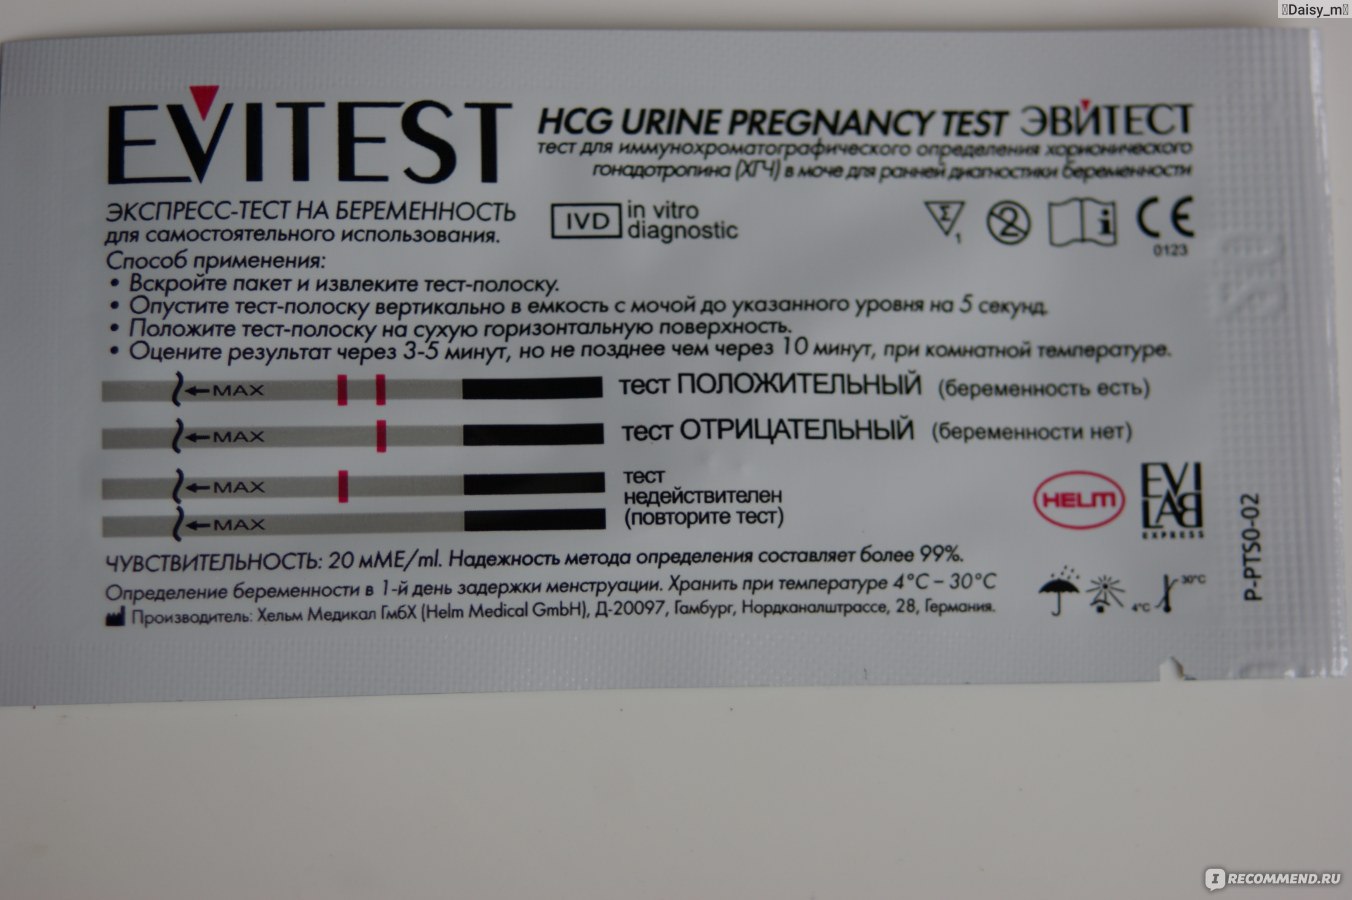 Чувствительность теста на беременность 20. Чувствительность тестов на беременность 20 ММЕ/мл. Эвитест 10 ММЕ/мл. Тест на беременность эвитест чувствительность. Тест чувствительность 10 ММЕ/мл тест на беременность.